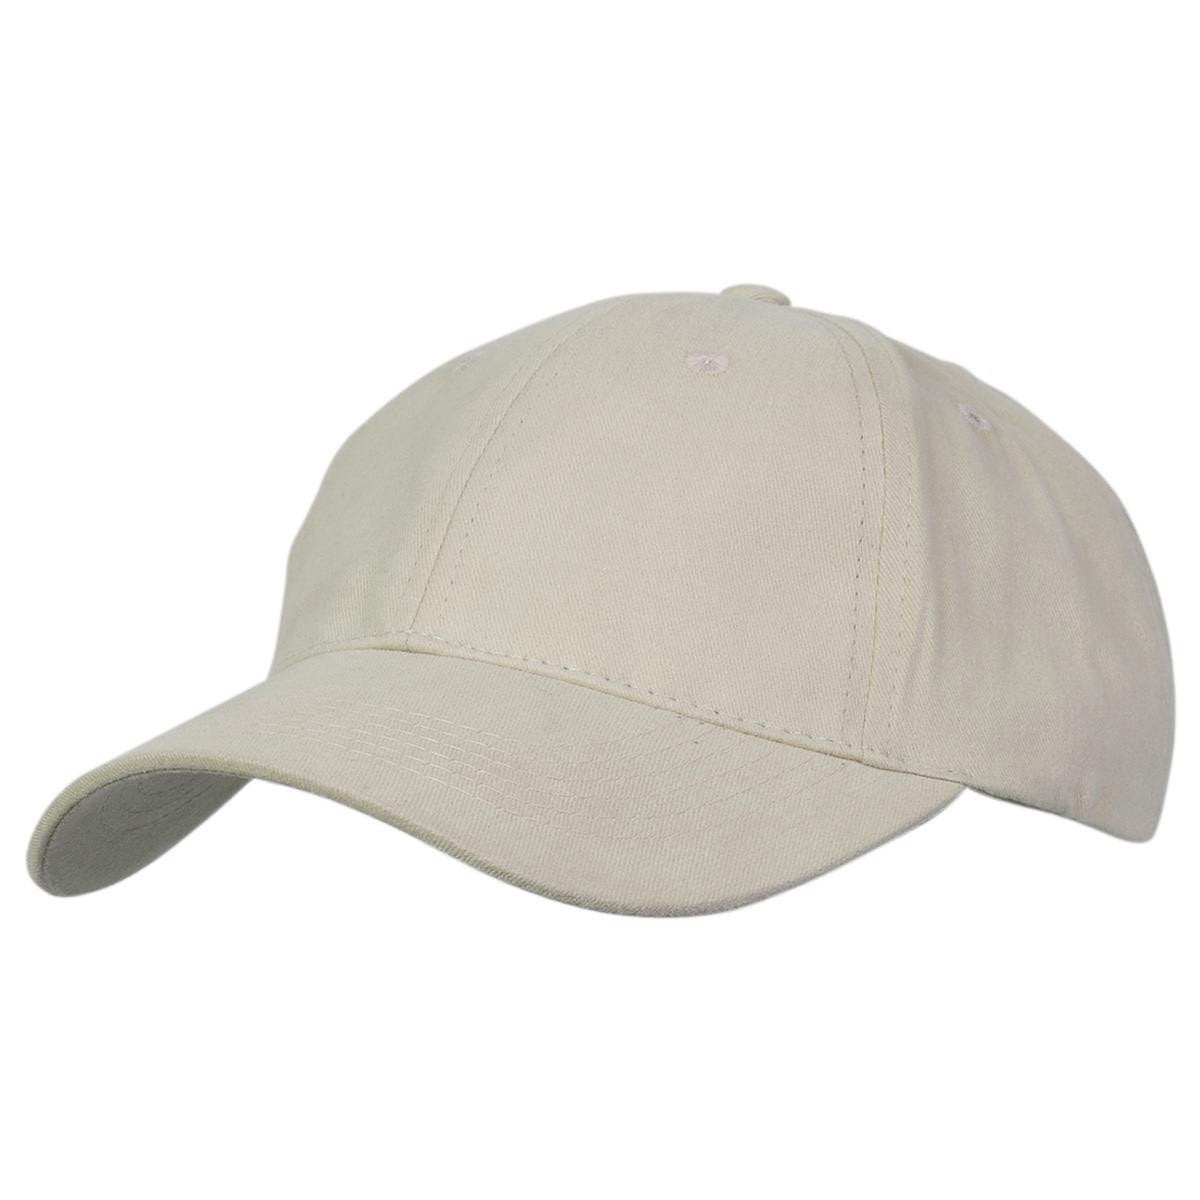 Premium Soft Cotton Cap